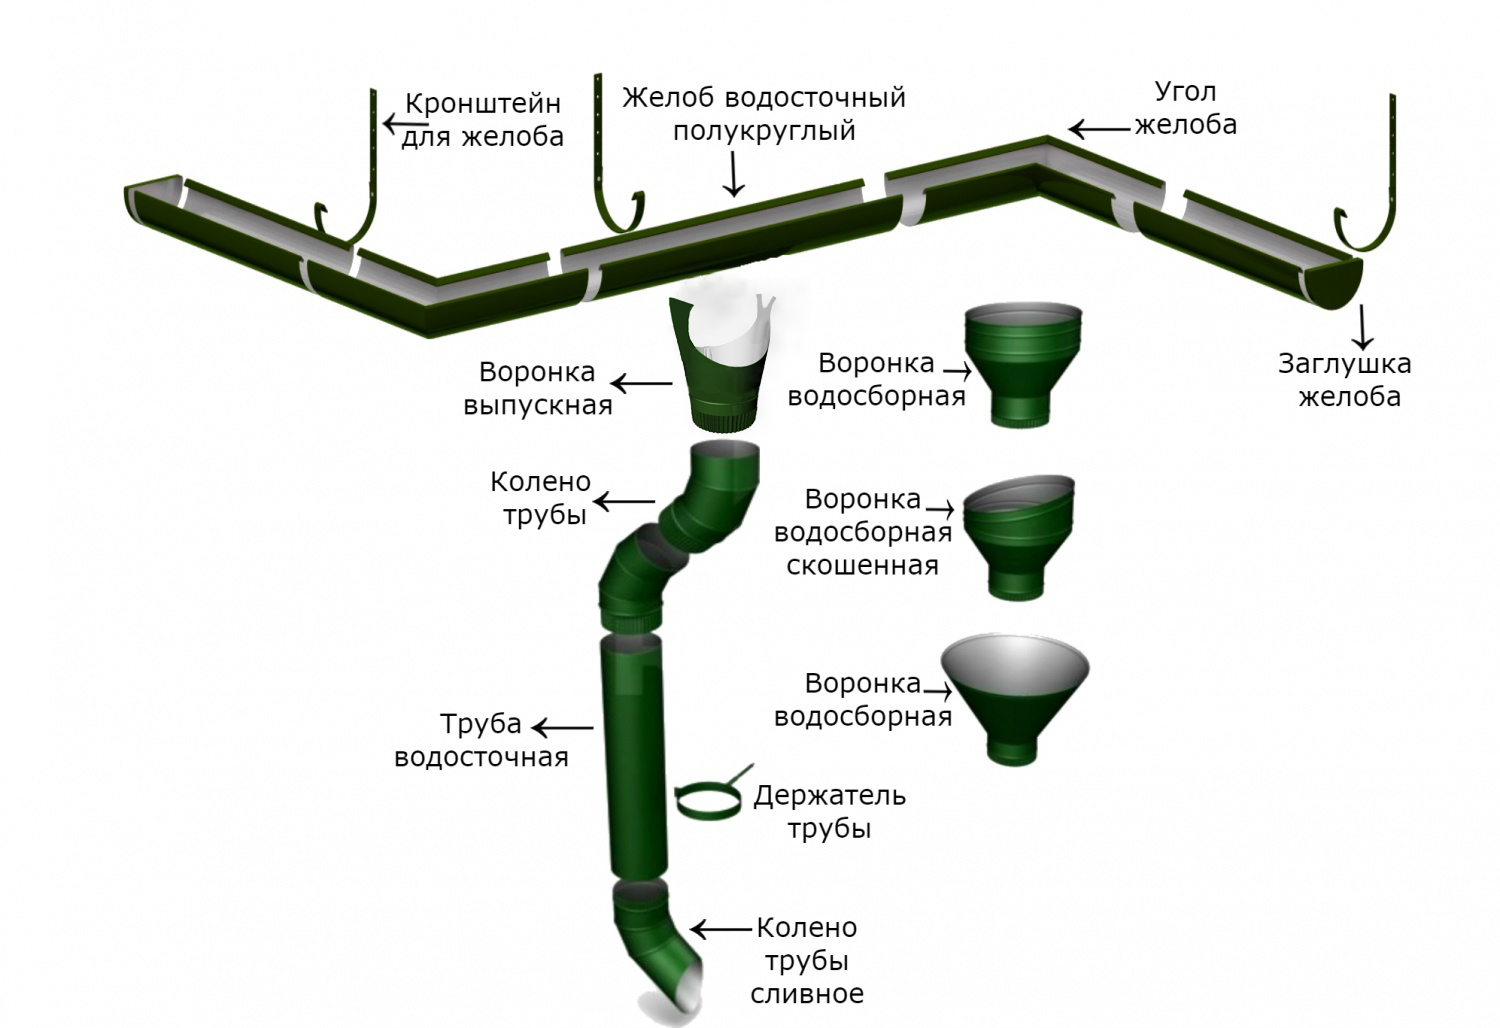 Применение пластиковых труб для организации водосточных систем